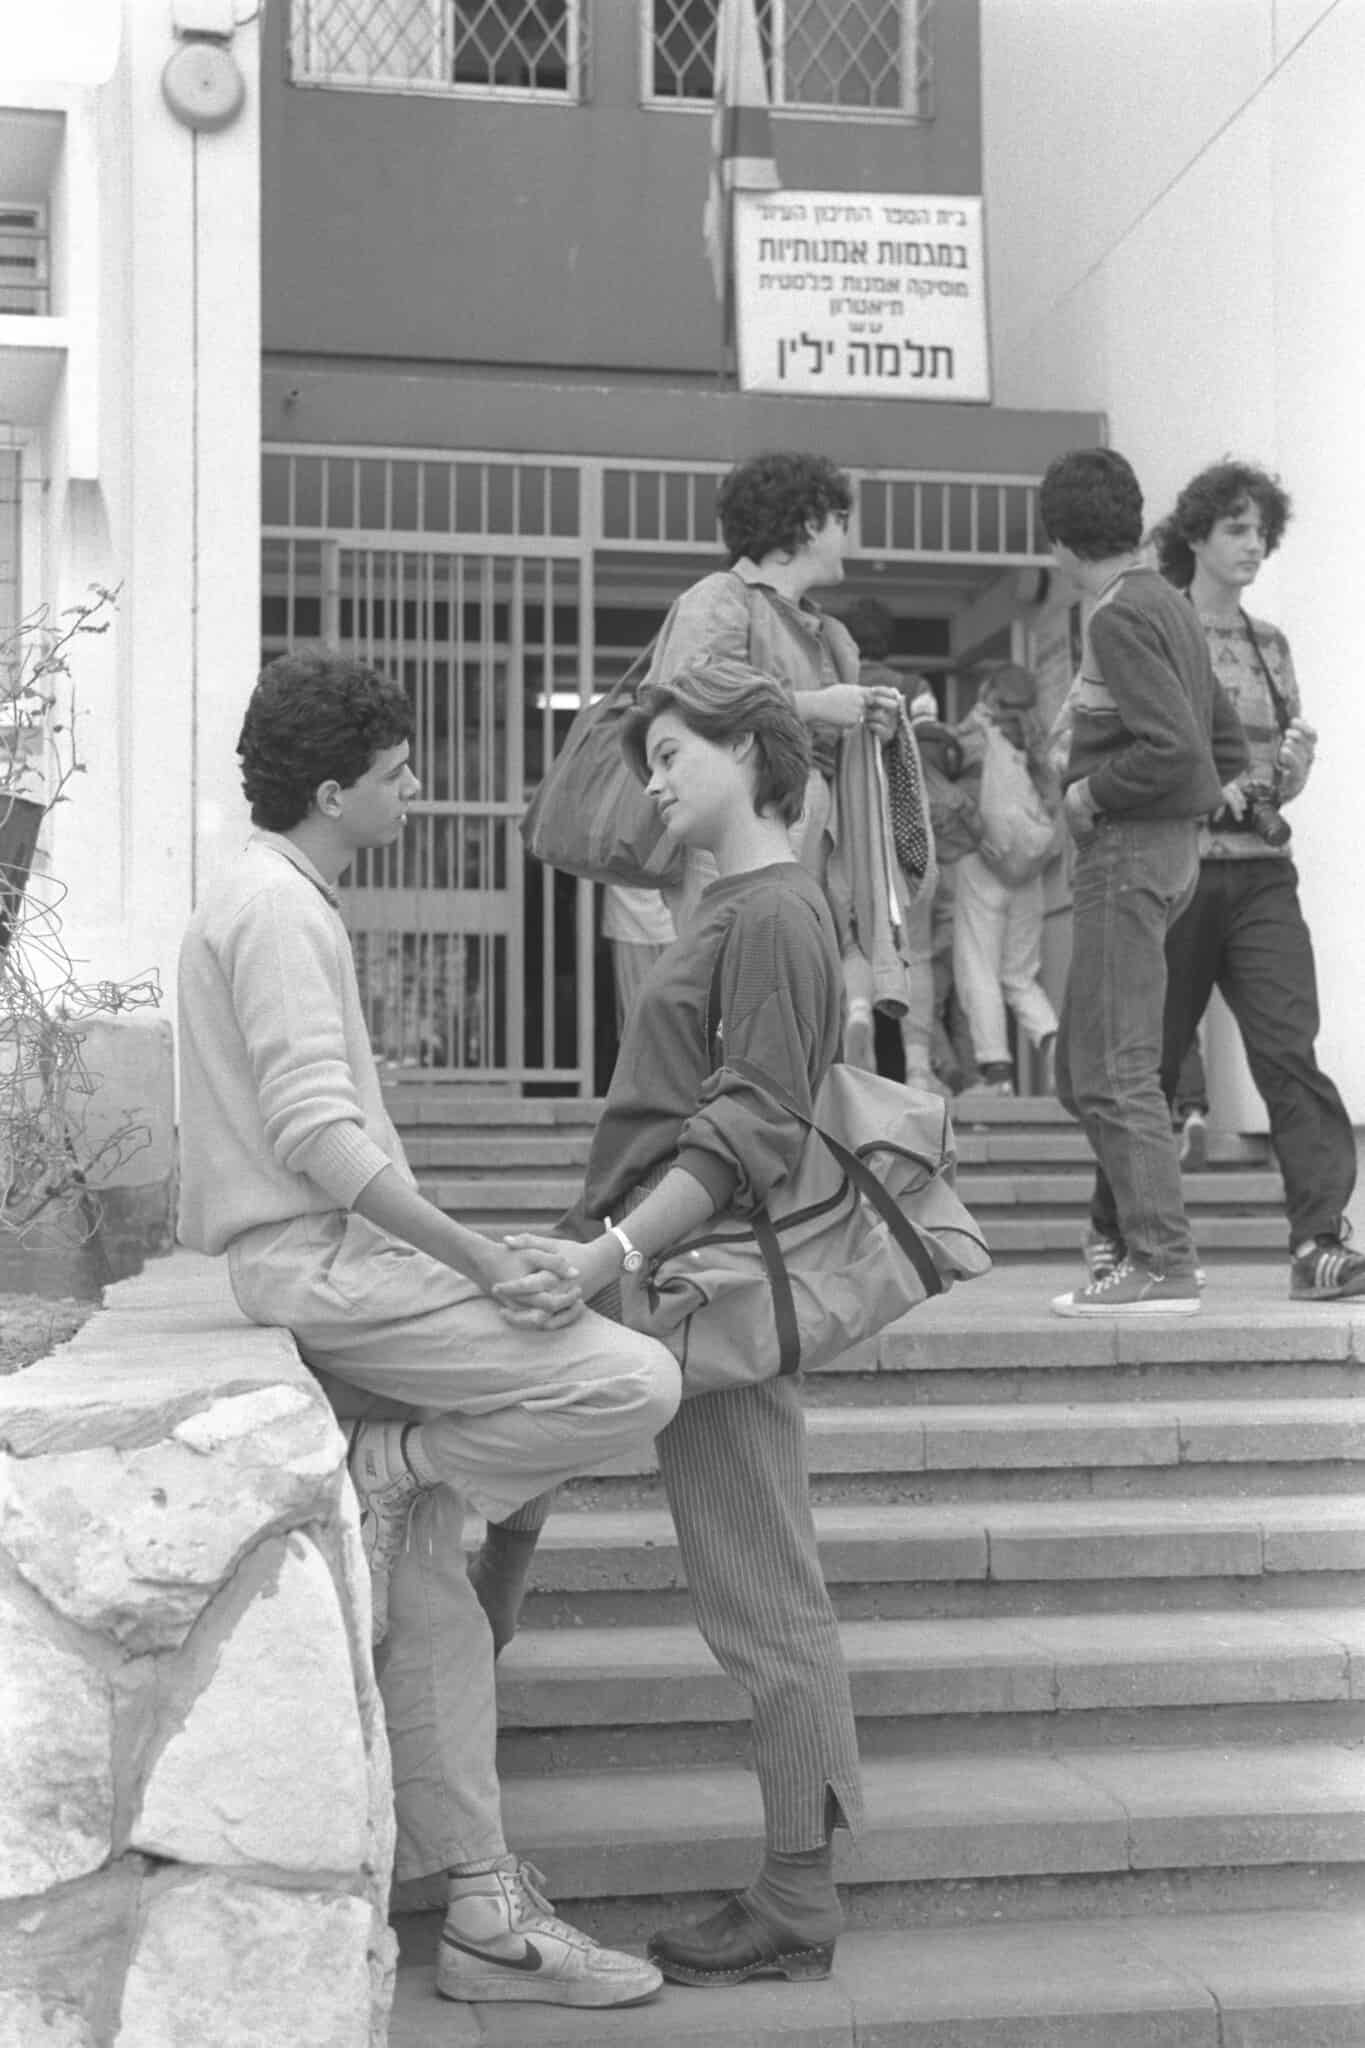 תלמה ילין 1985 (צילום: חנניה הרמן)